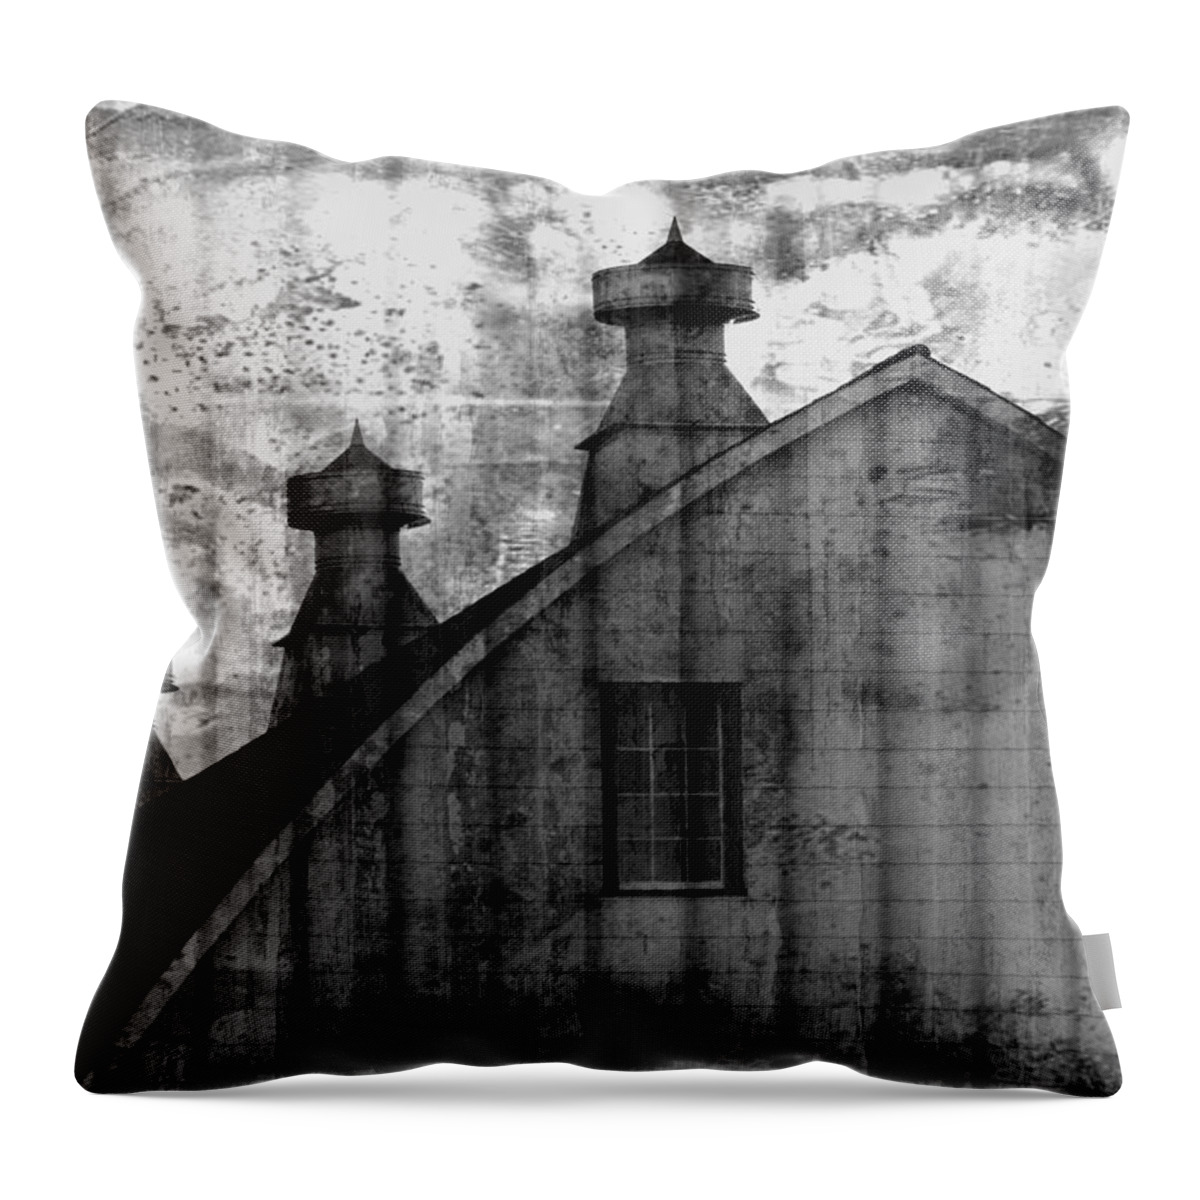 Skompski Throw Pillow featuring the photograph Antique Barn - Black and White by Joseph Skompski